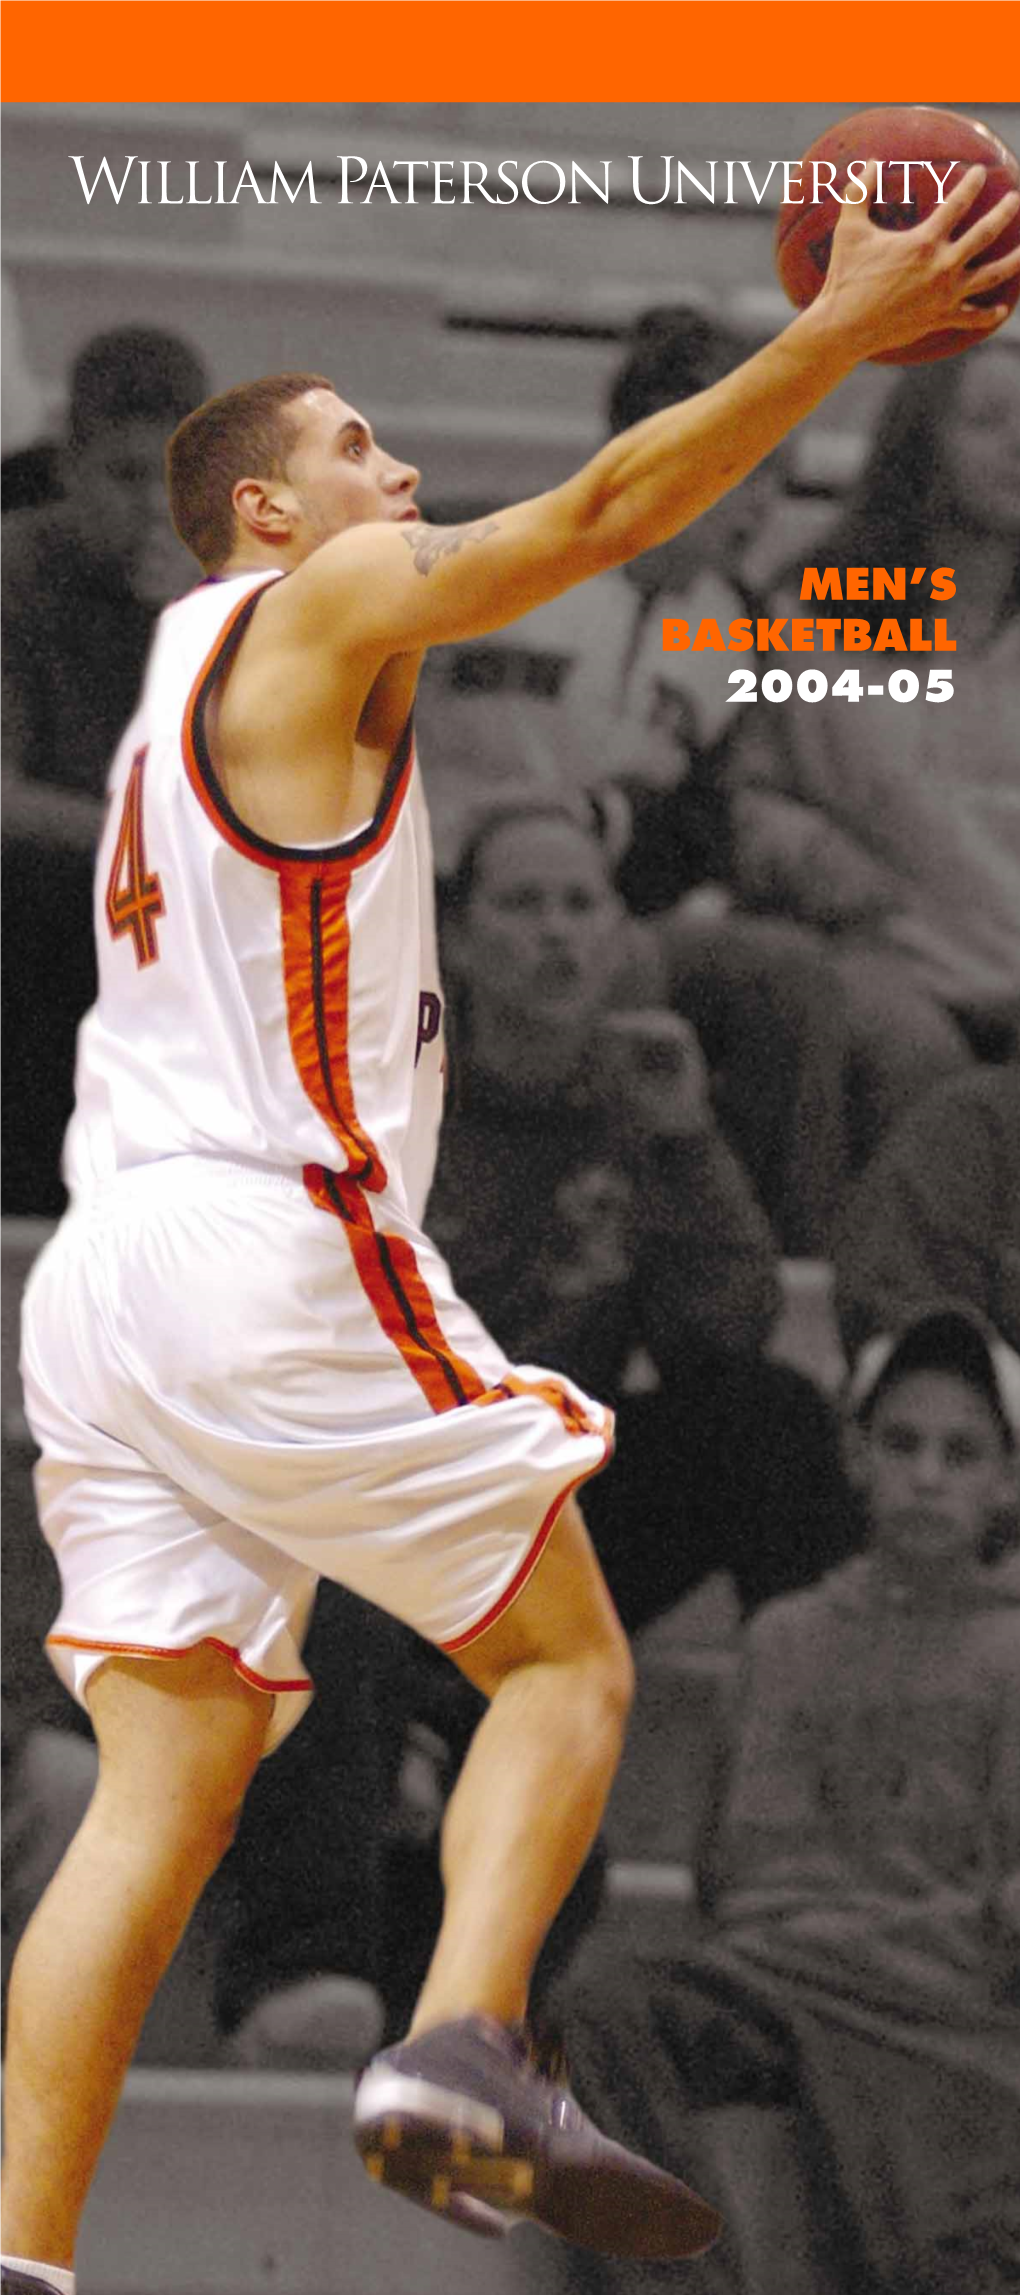 Men's Basketball 2004-05